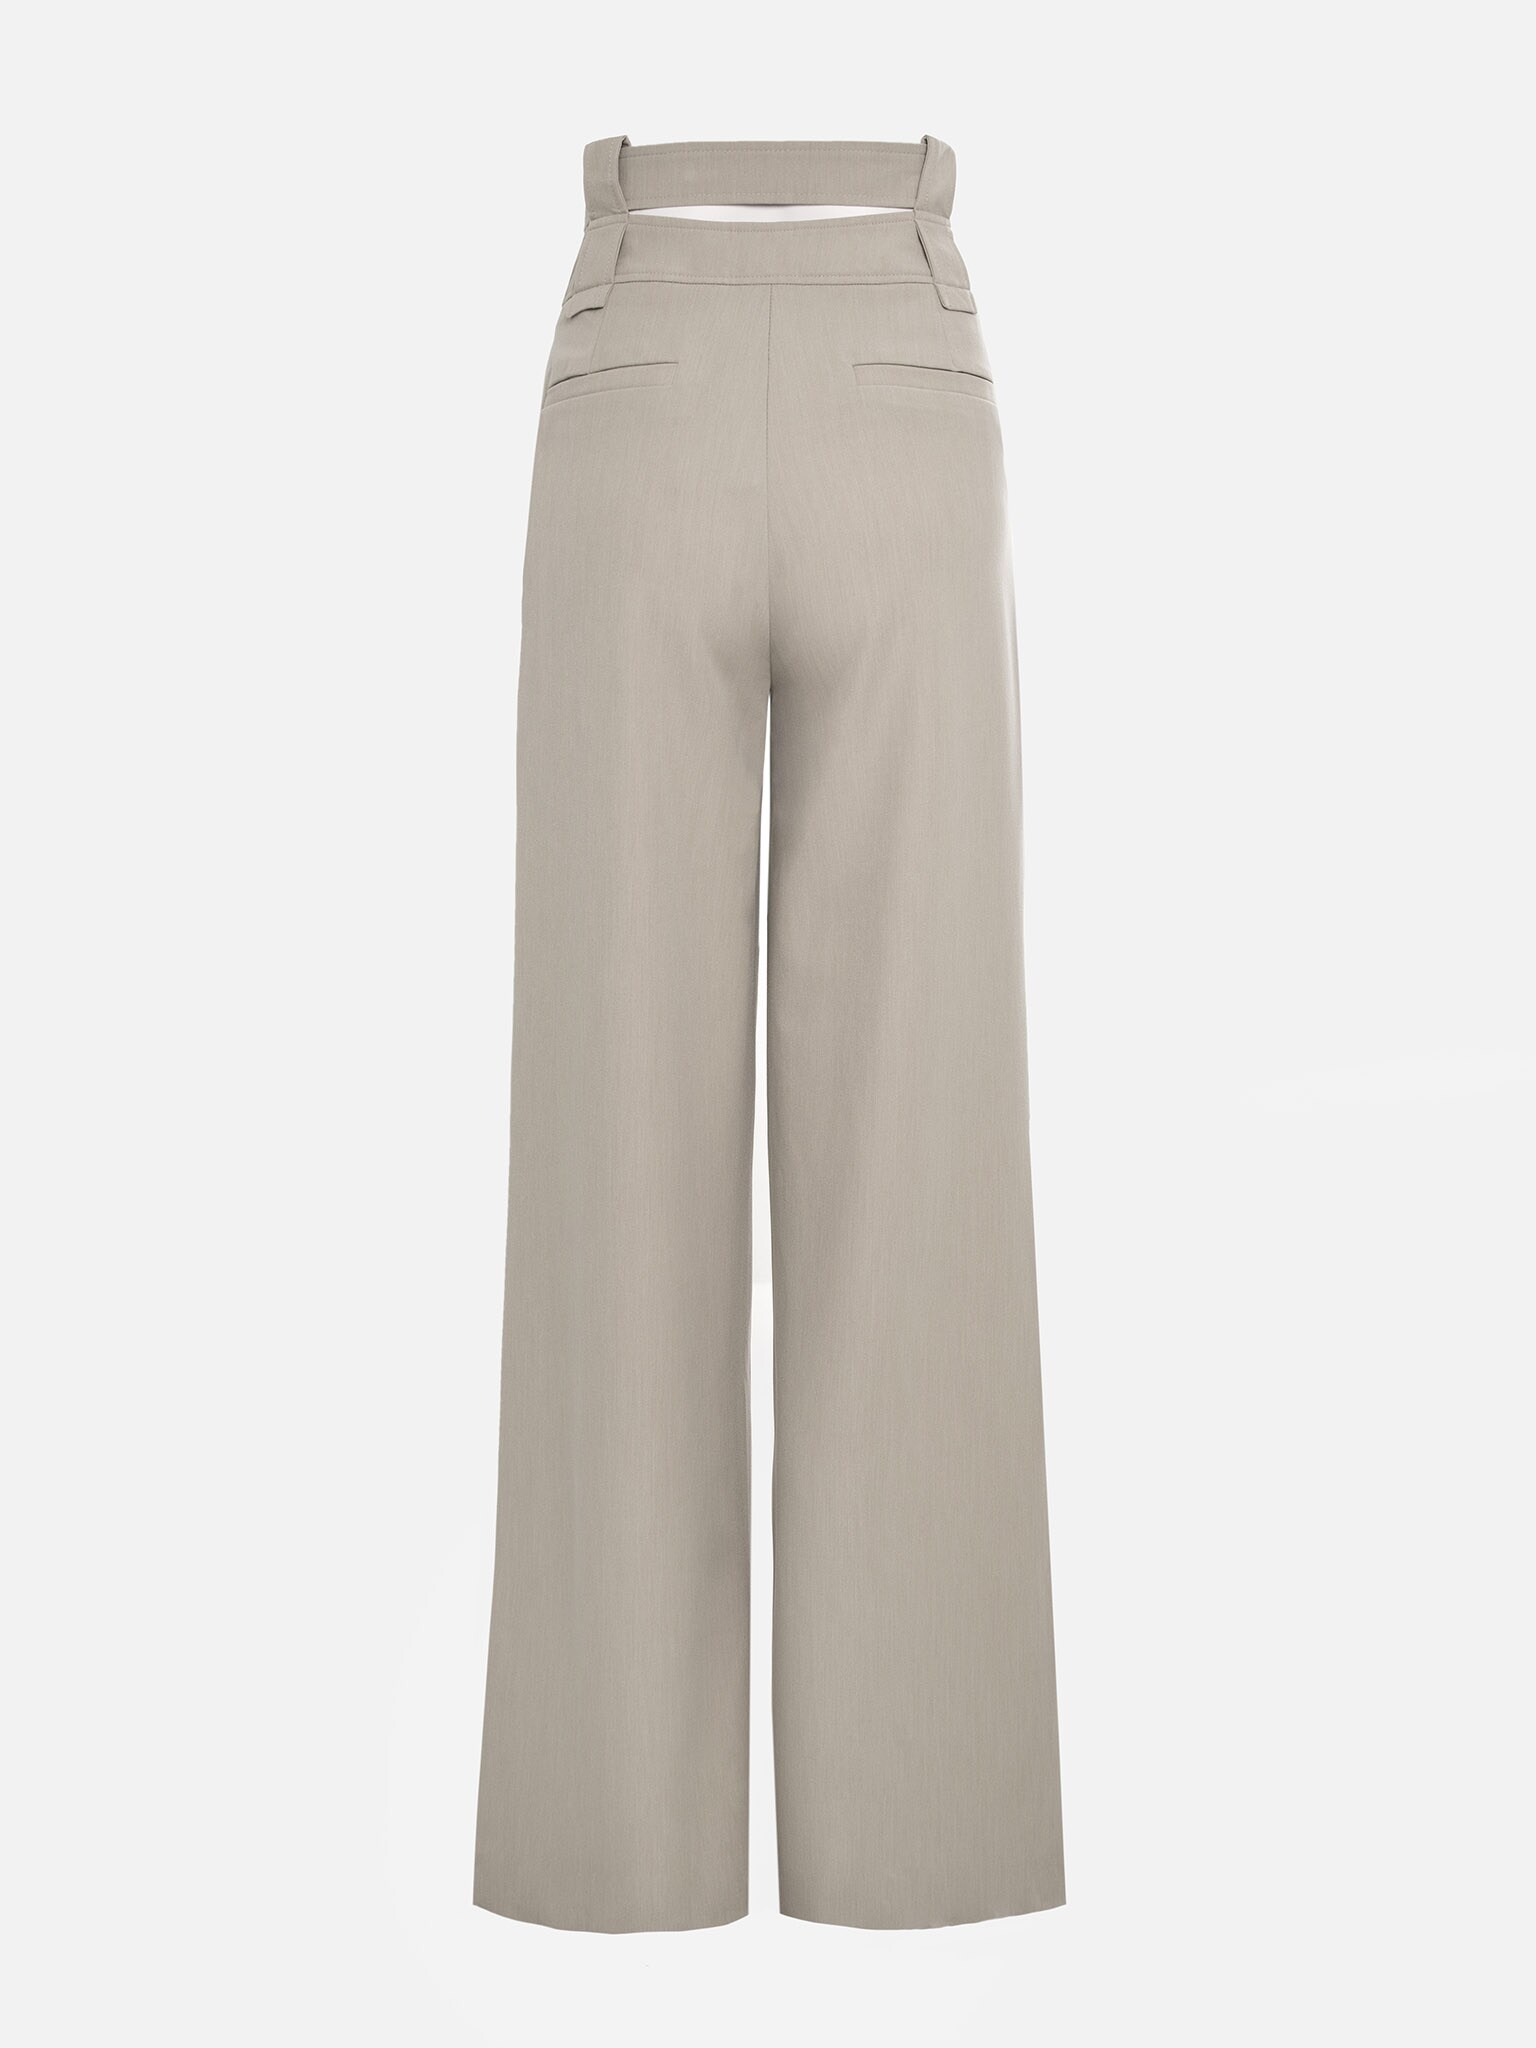 Double-waistband palazzo pants :: LICHI - Online fashion store